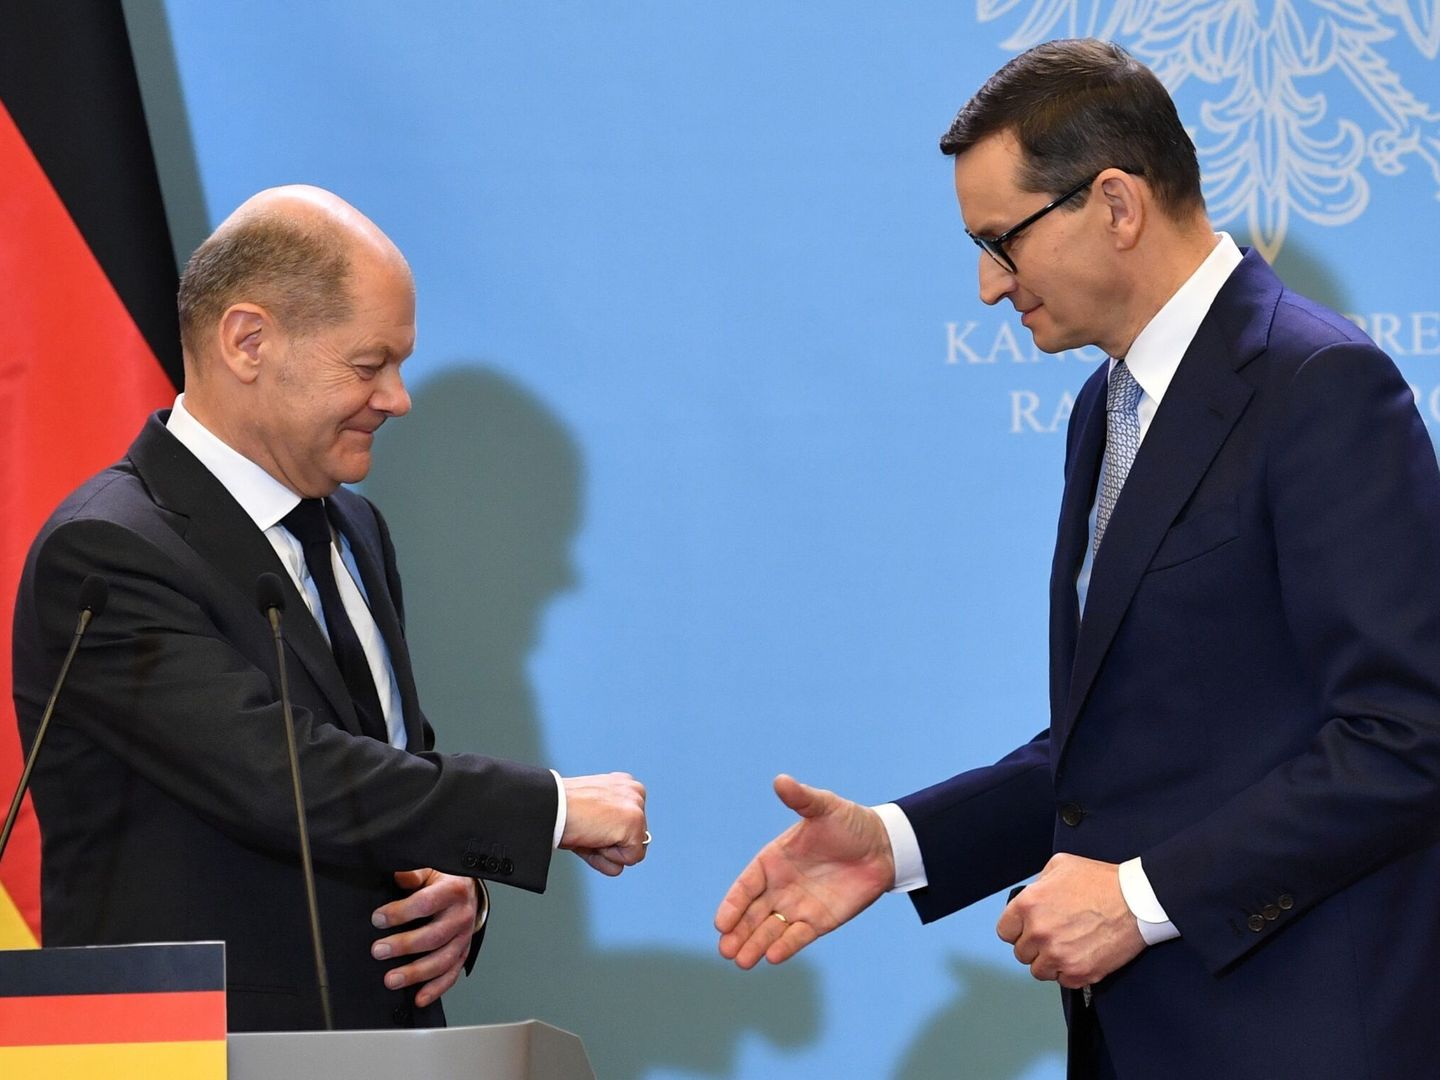 El canciller alemán ofrece el puño al primer ministro polaco, que le intenta dar la mano. (Reuters)